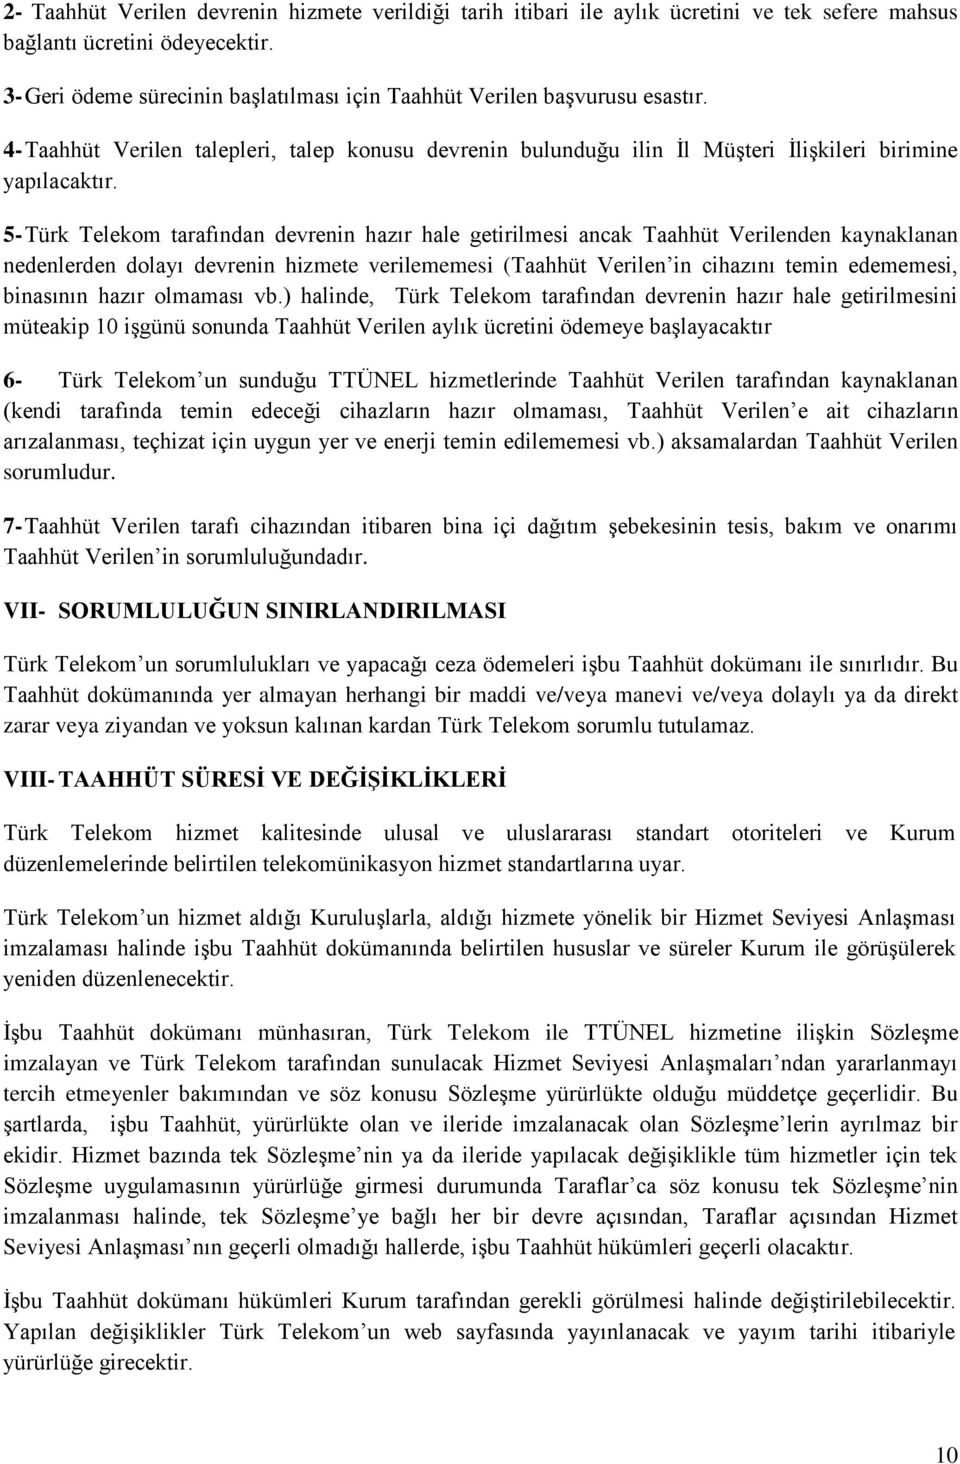 5- Türk Telekom tarafından devrenin hazır hale getirilmesi ancak Taahhüt Verilenden kaynaklanan nedenlerden dolayı devrenin hizmete verilememesi (Taahhüt Verilen in cihazını temin edememesi,